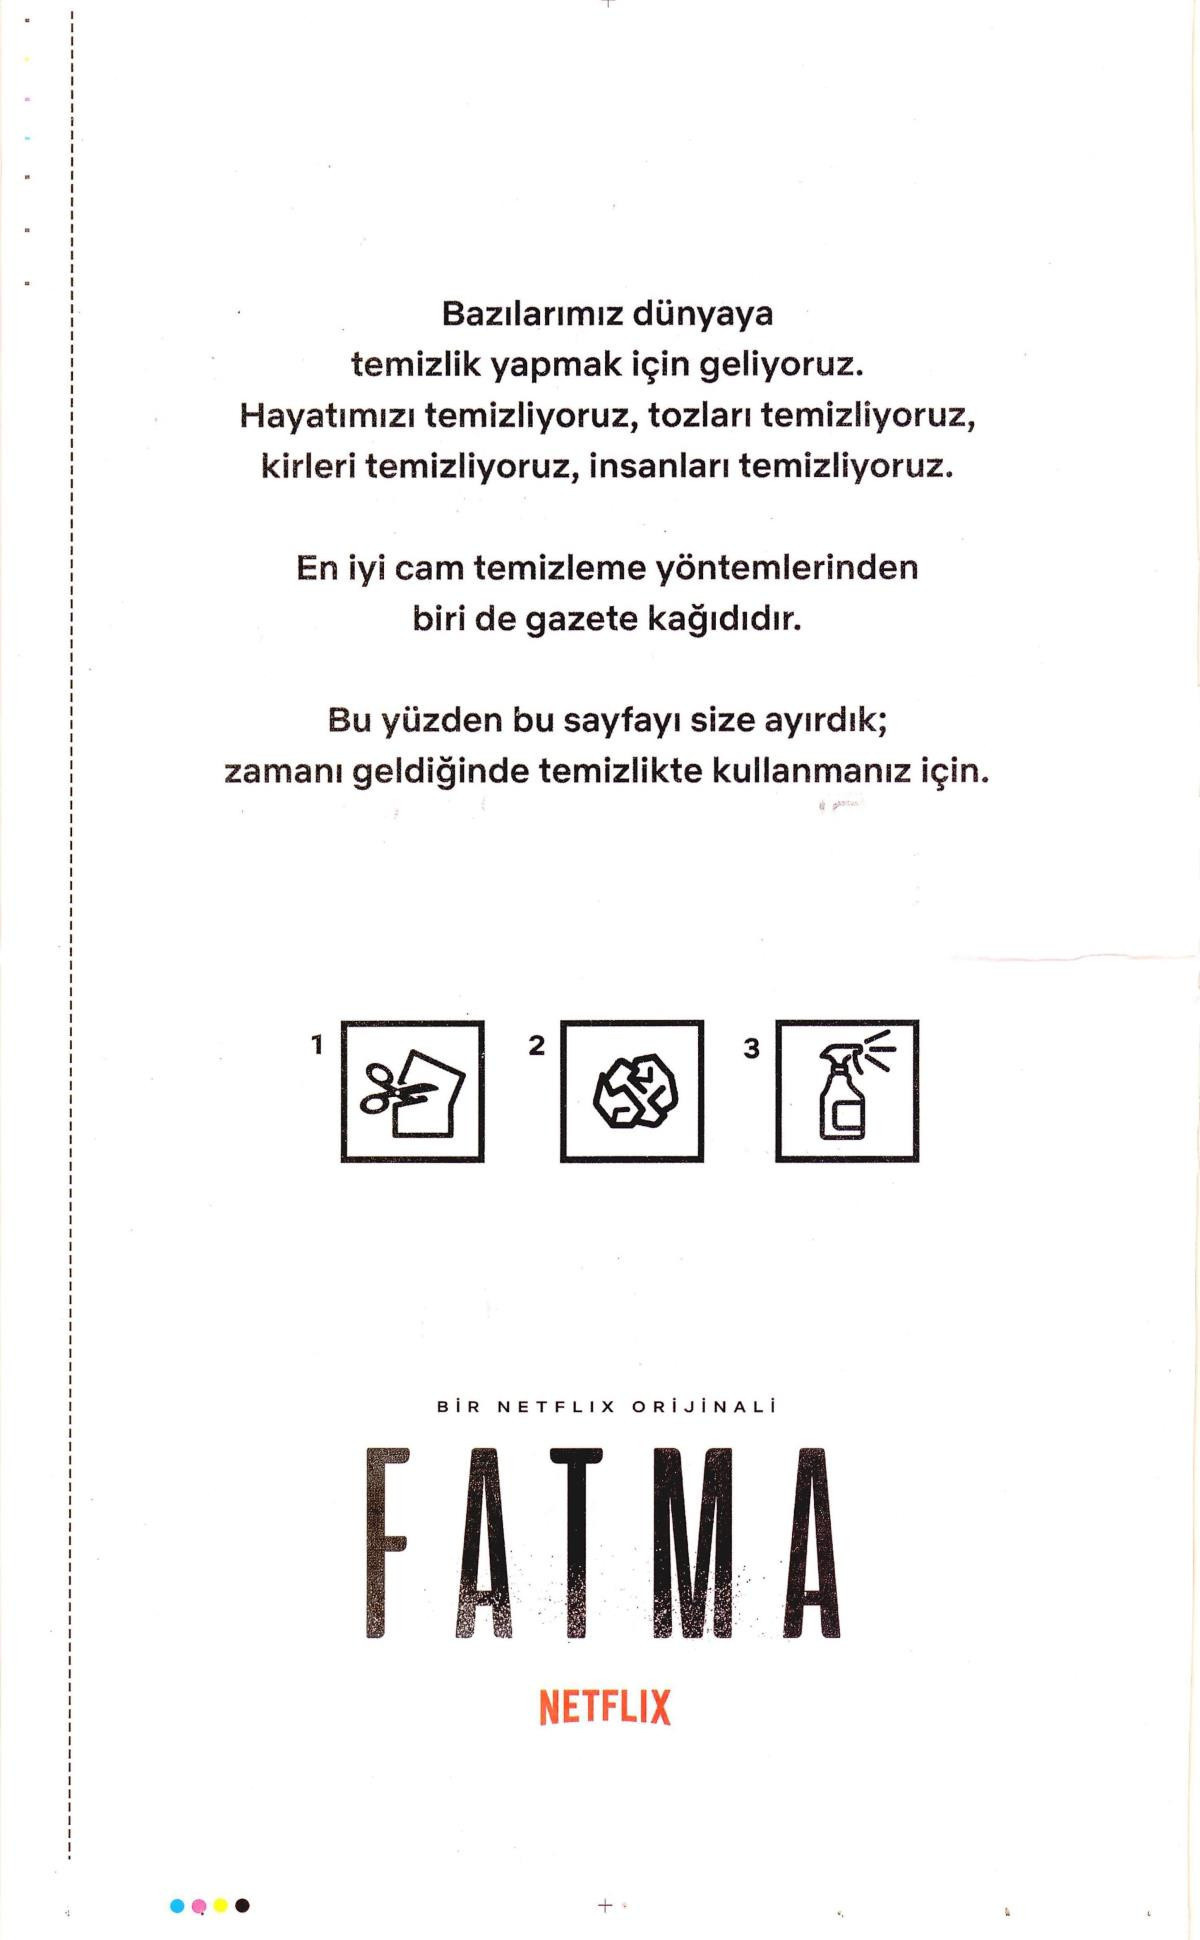 netflix fatma reklam